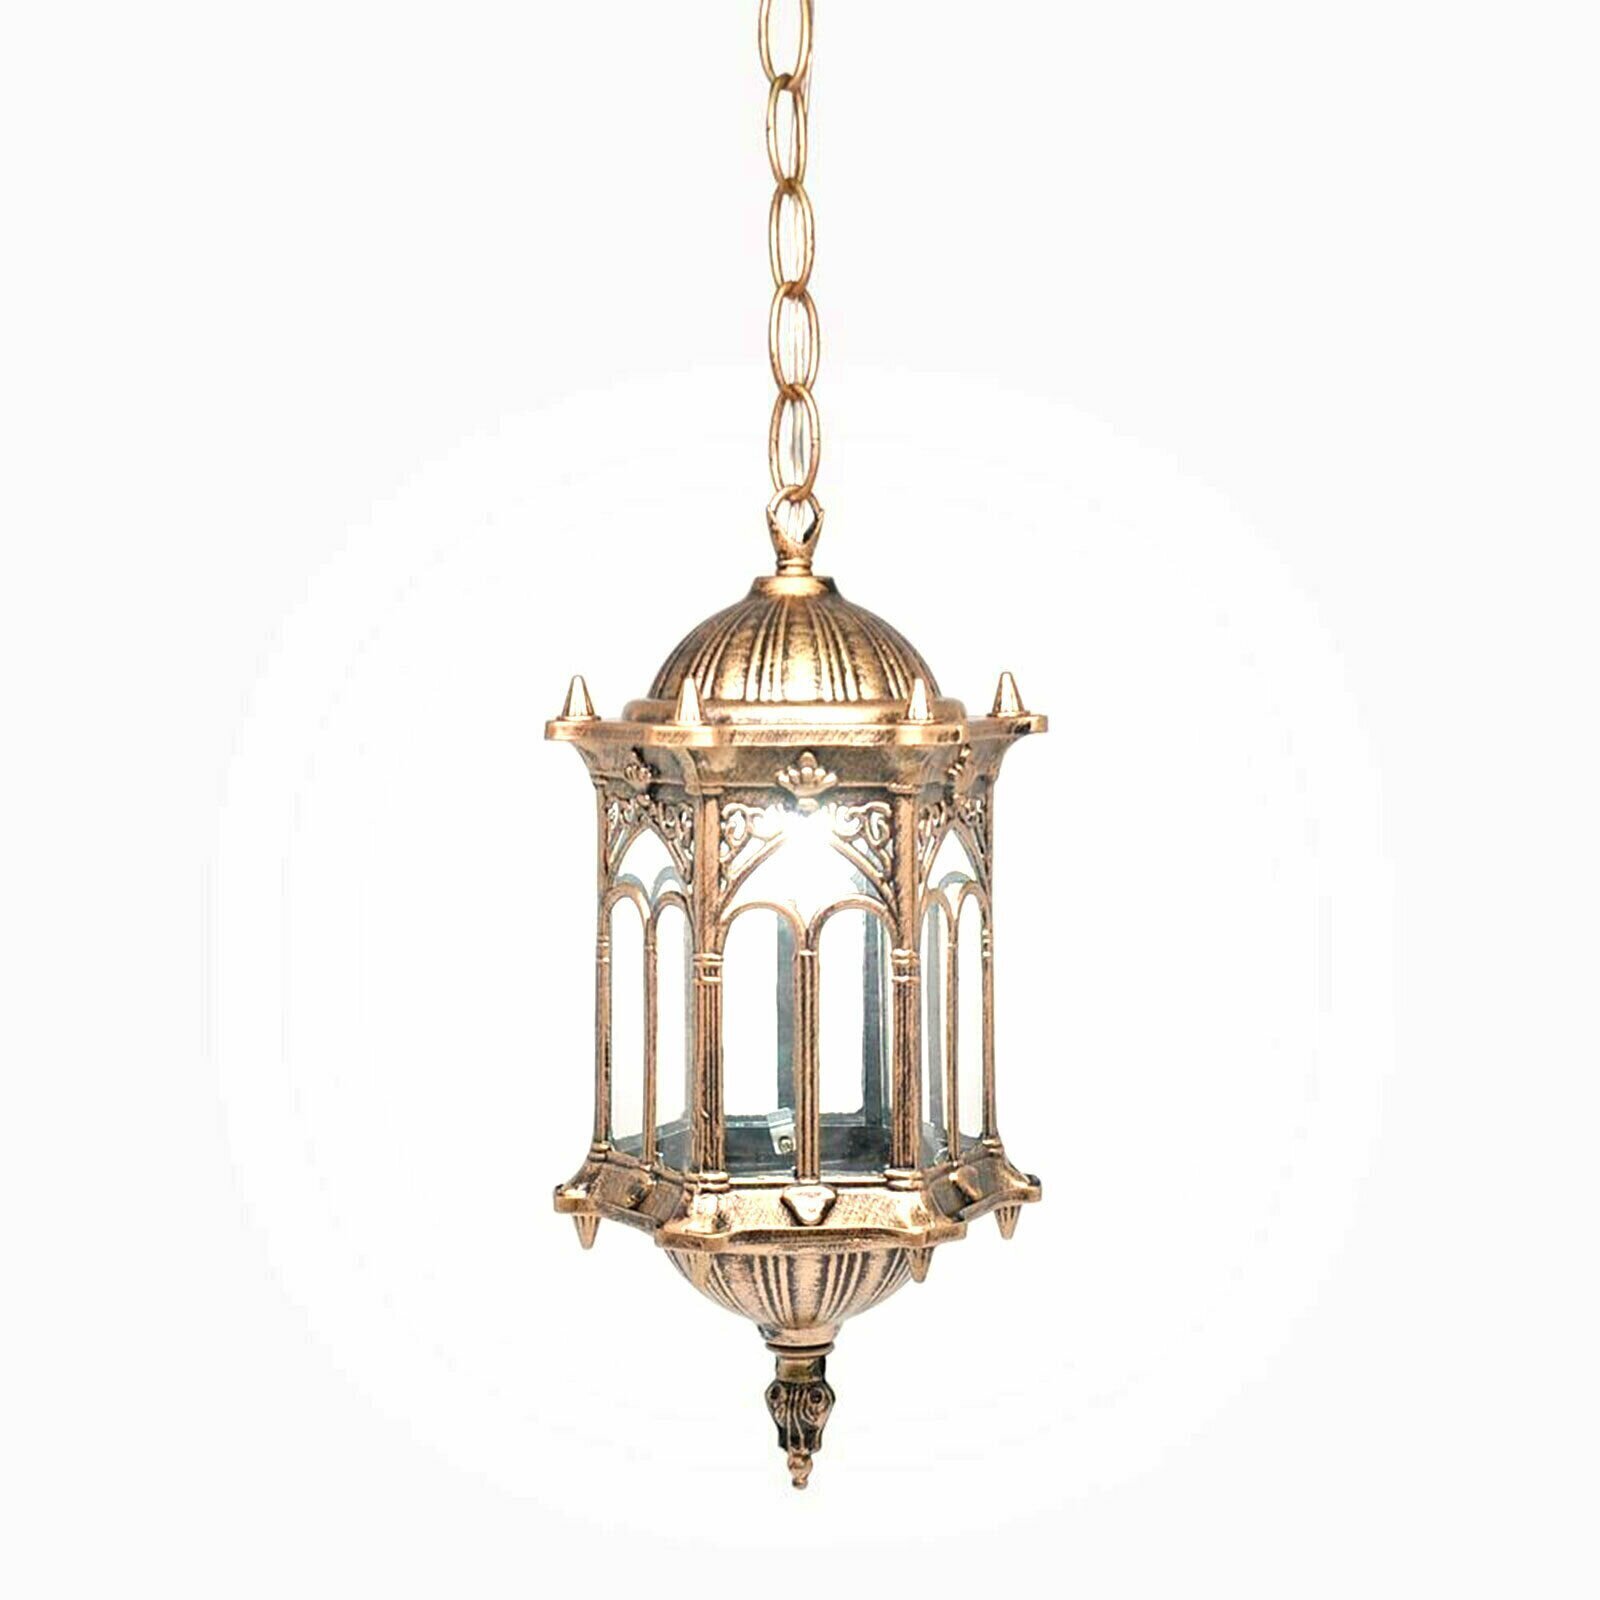 Regal Gold Hanging Lantern Lamp